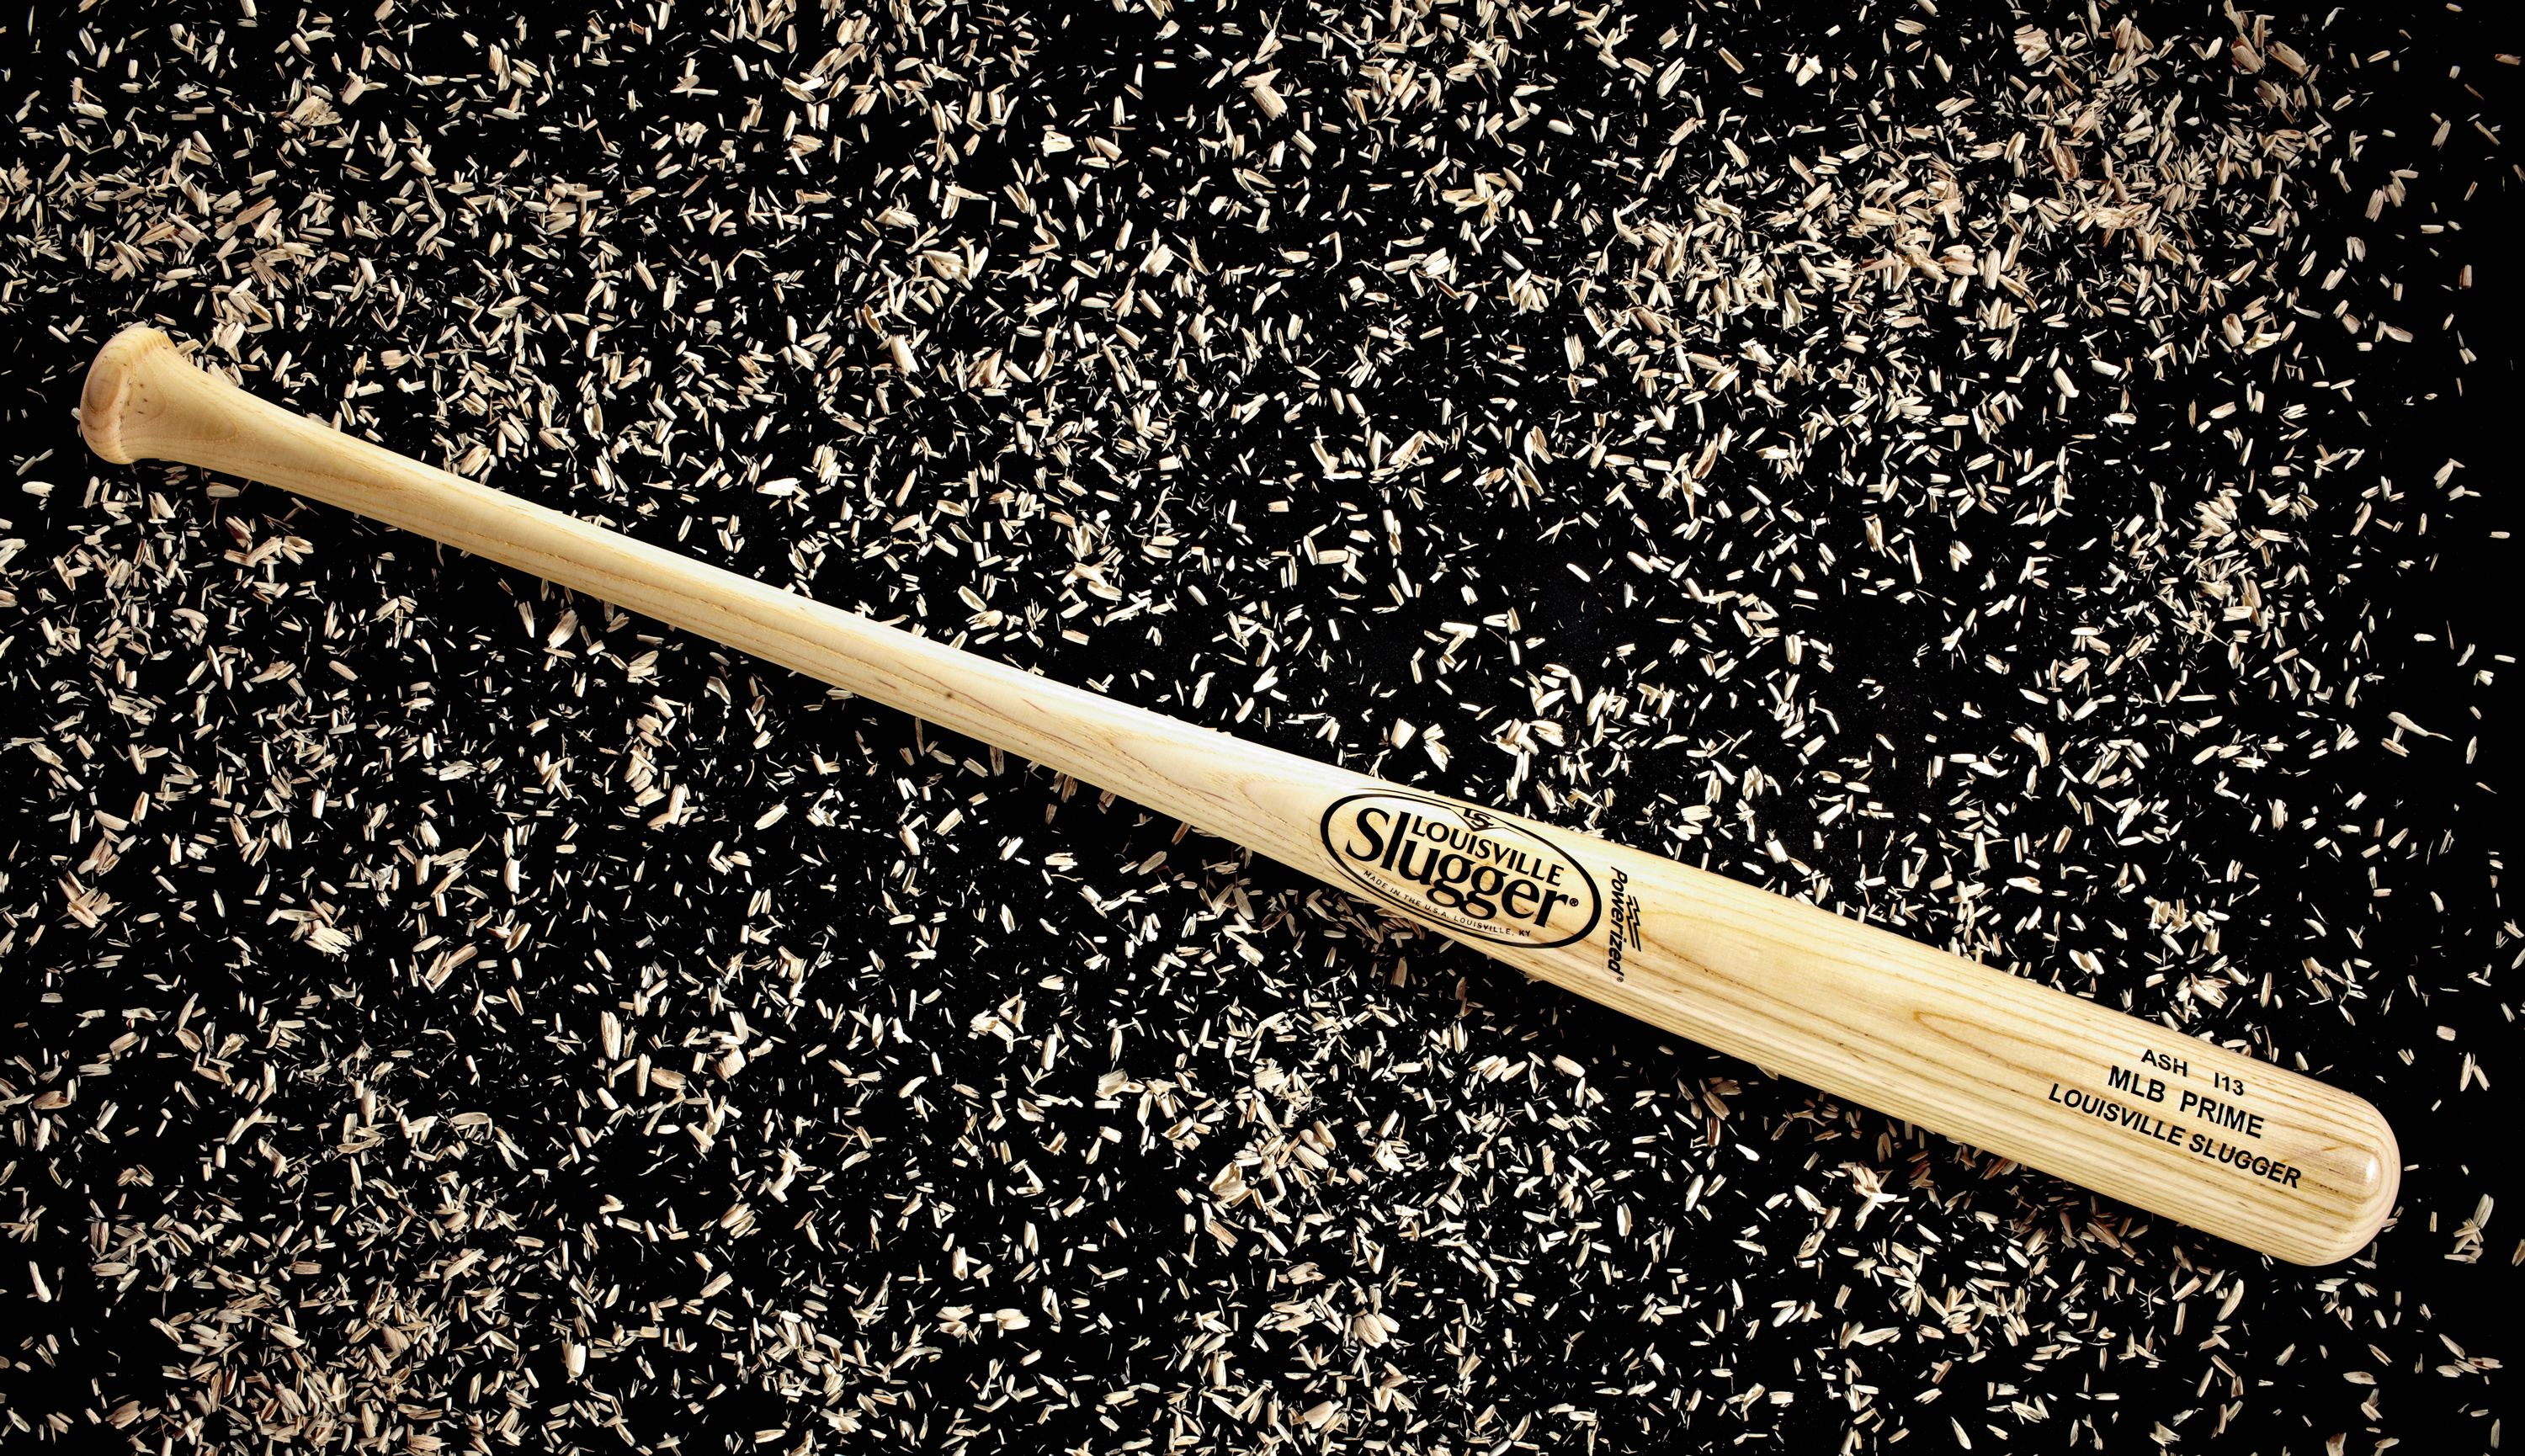 Chia sẻ 52+ về MLB baseball bat mới nhất American Horror Story